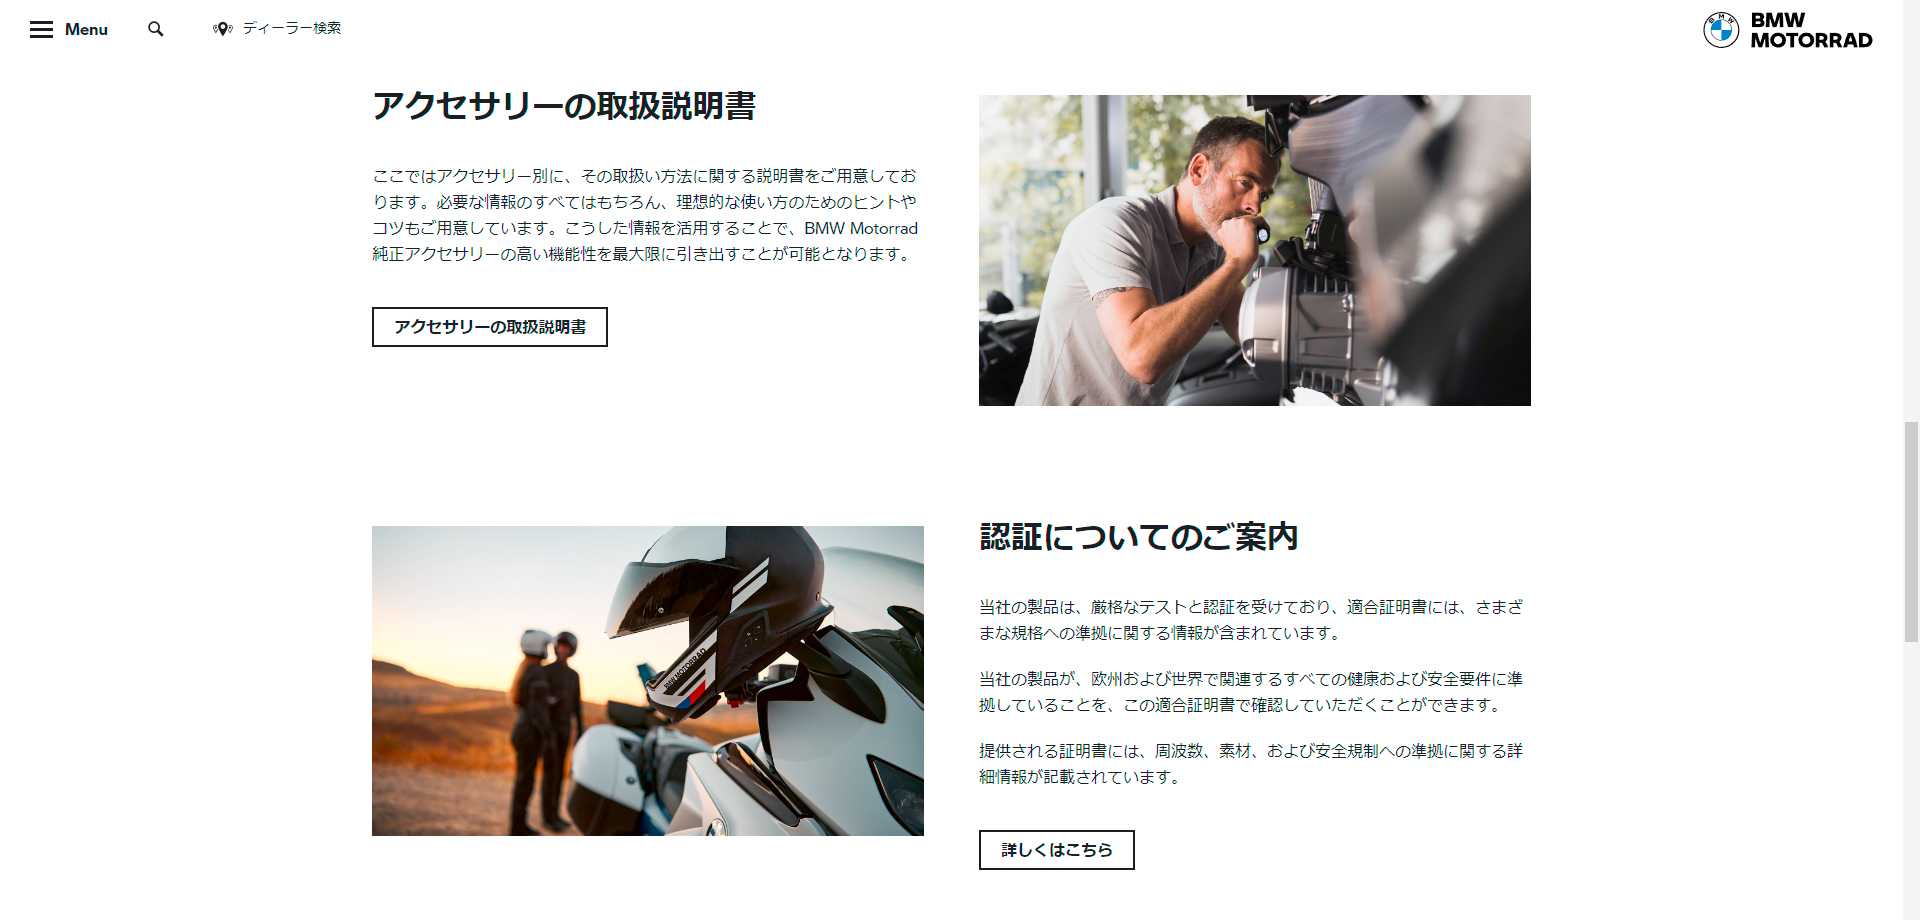 日本のサイトからも取扱説明書等がダウンロードできる。（私とBMW